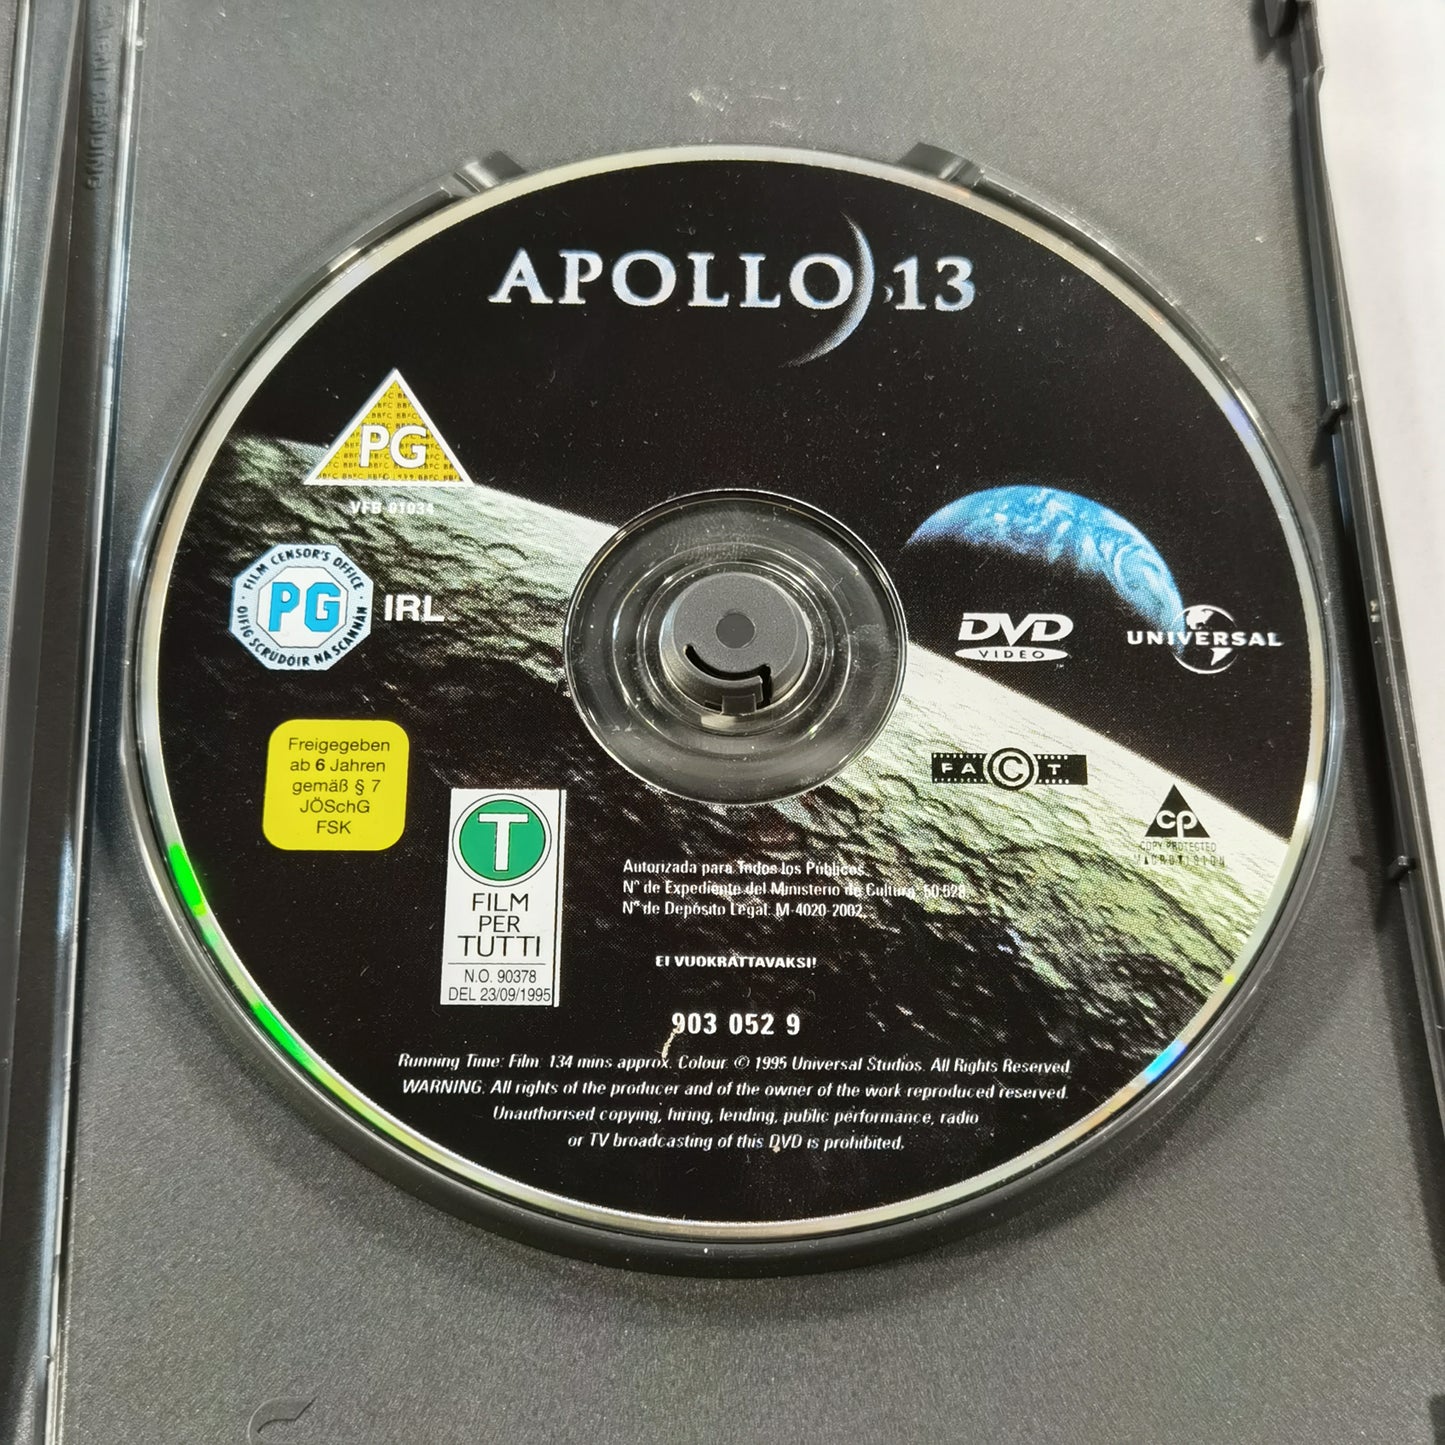 Apollo 13 (1995) - DVD UK 2002